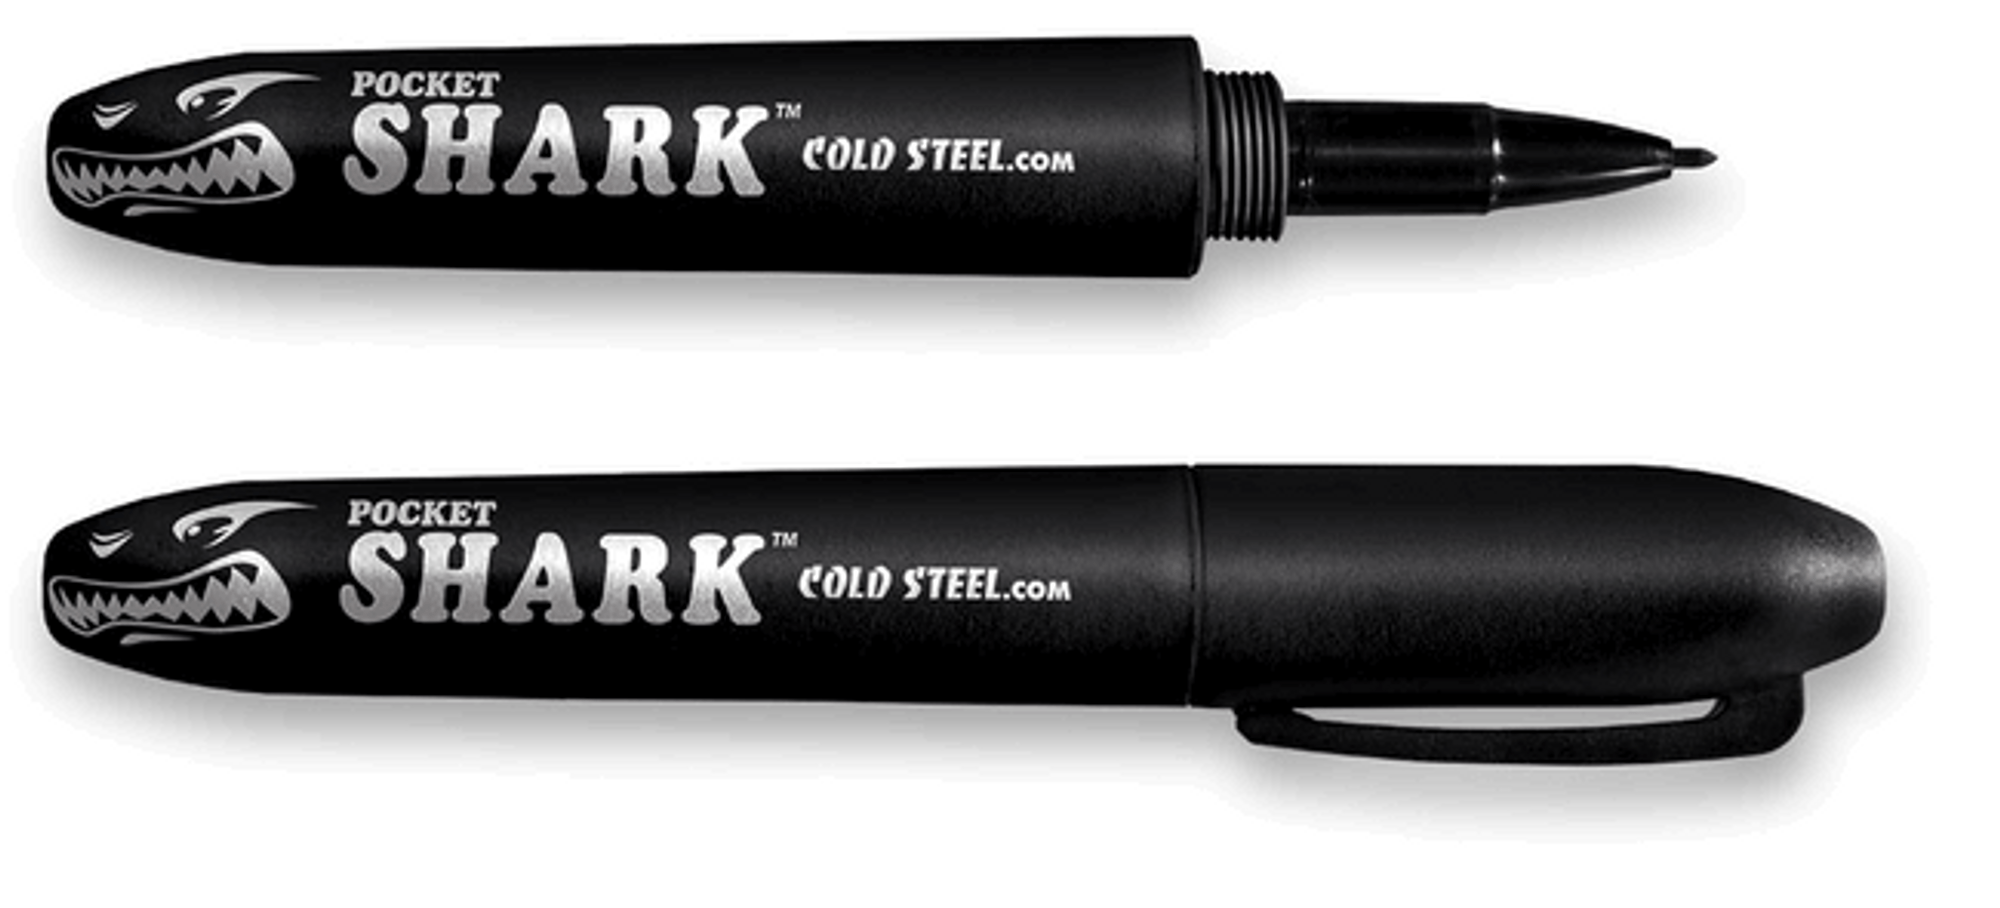 Cold Steel 91SPBK Pocket Shark